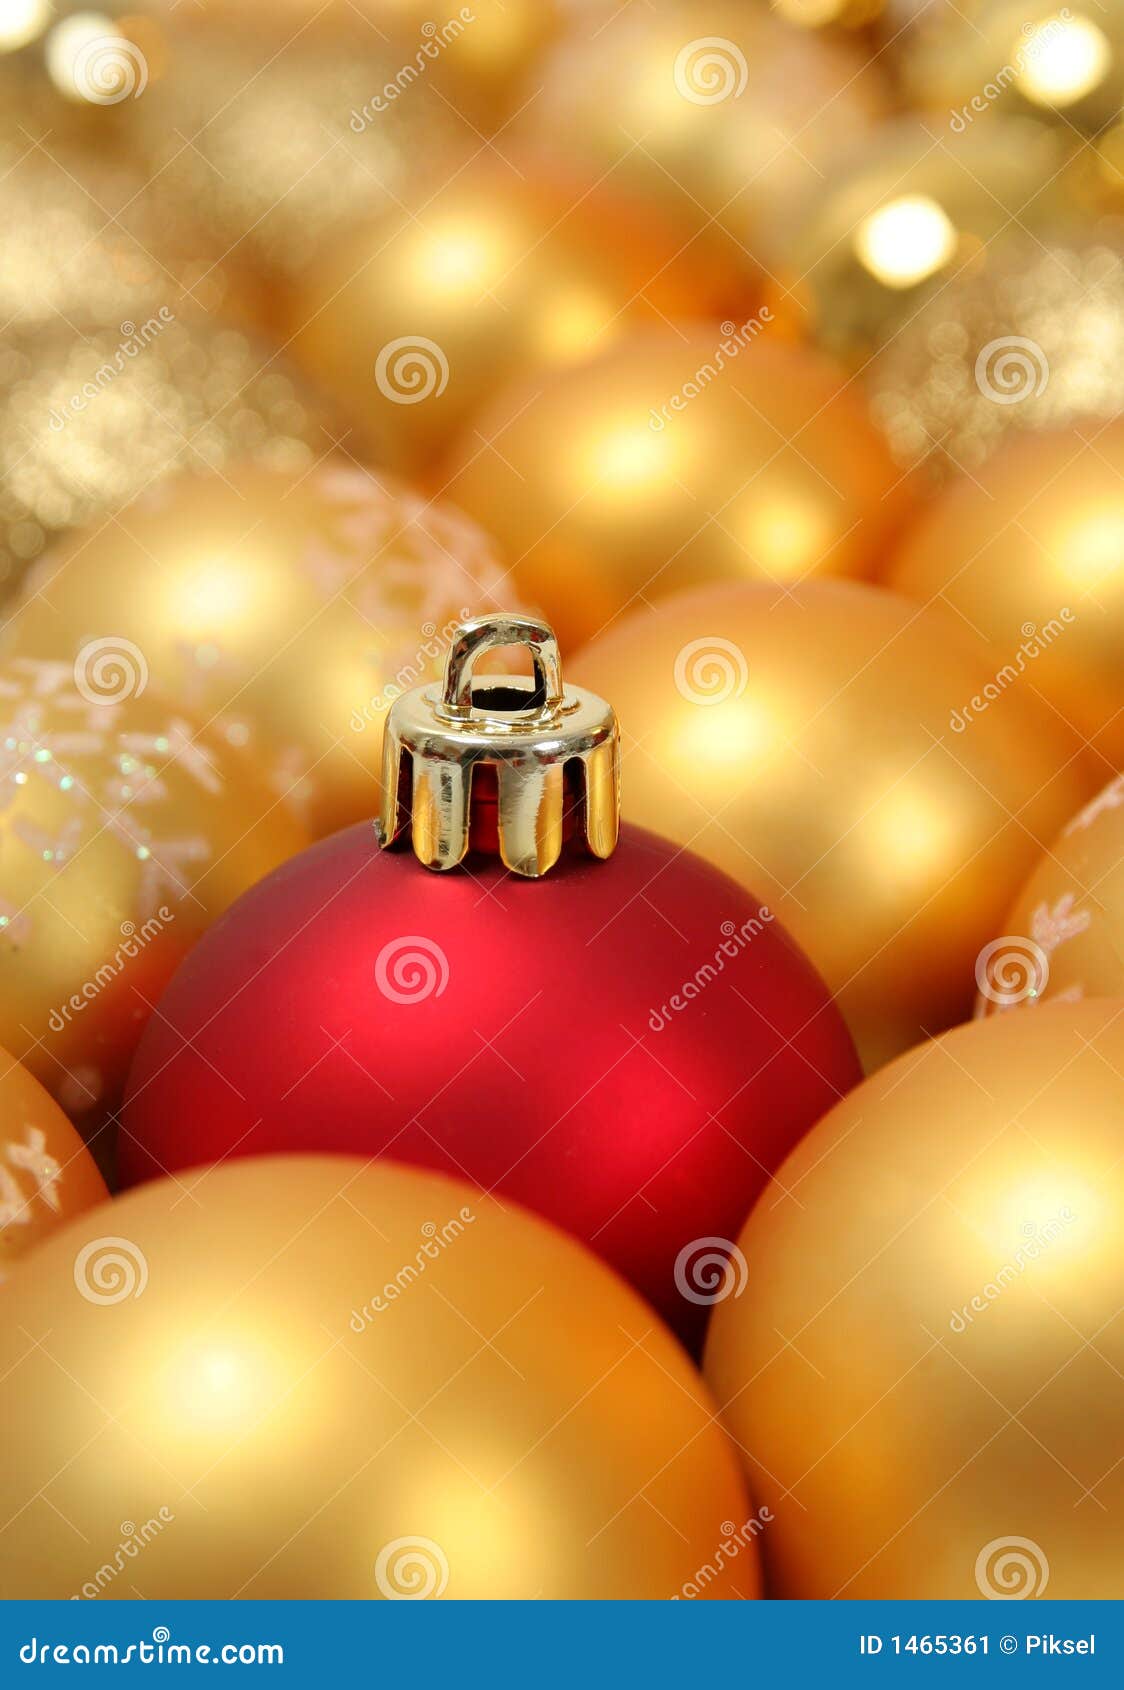 Christmas balls stock image. Image of bulb, glass, texture - 1465361